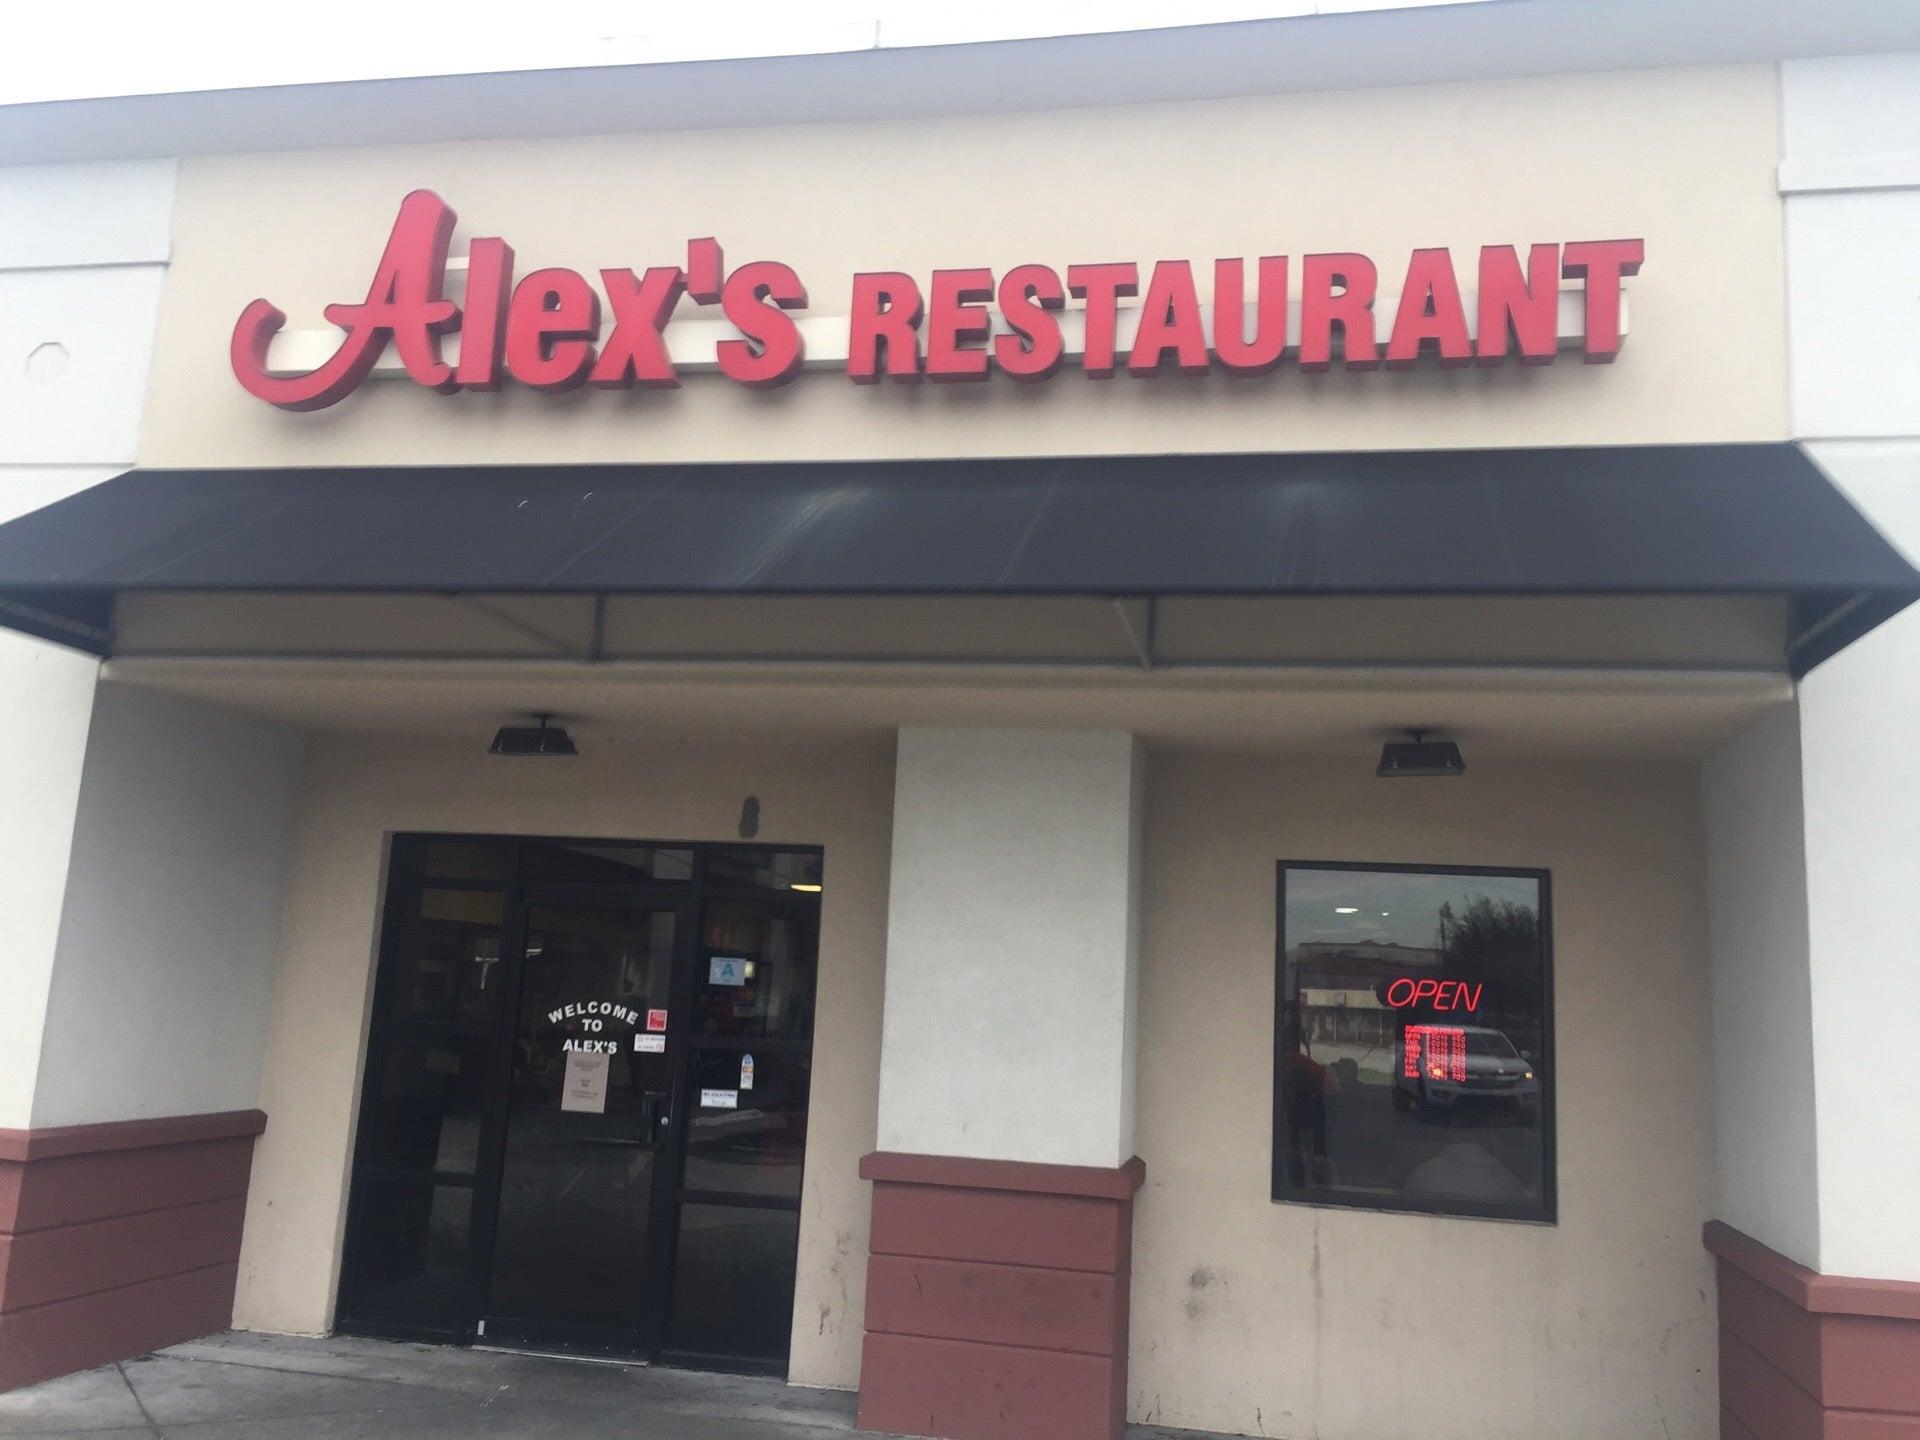 Alex's Restaurant